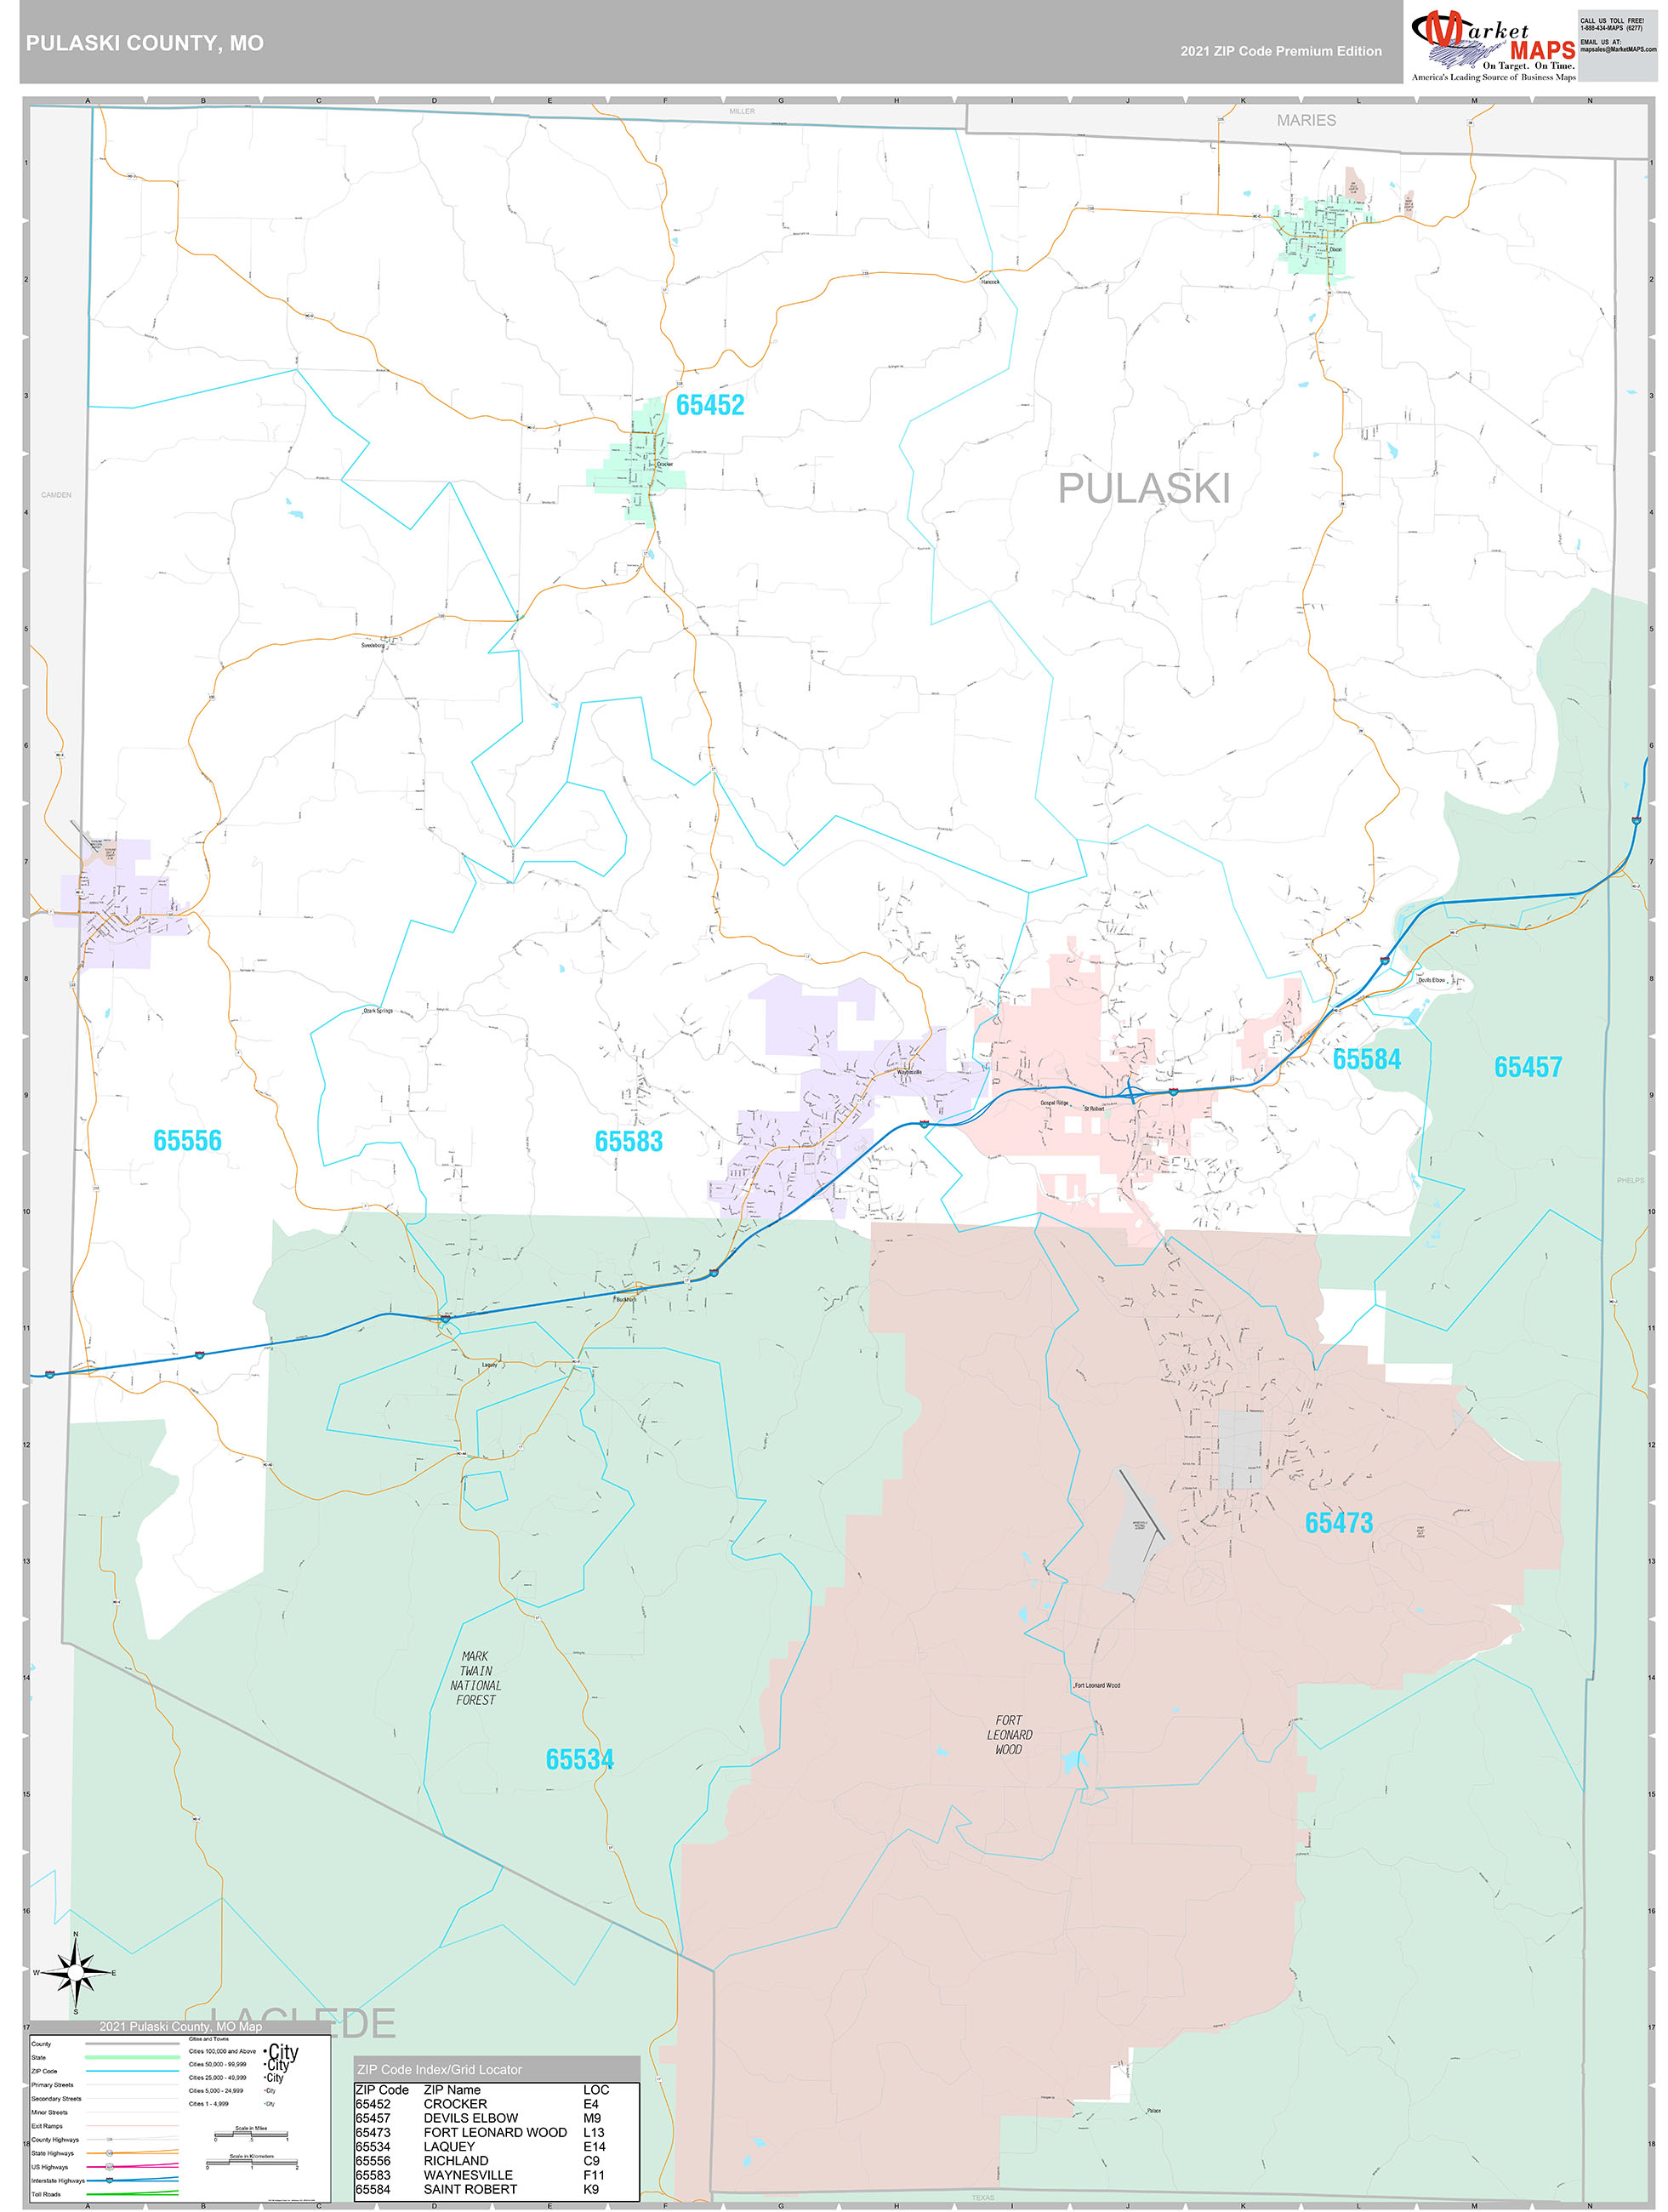 Pulaski County, MO Wall Map Premium Style by MarketMAPS